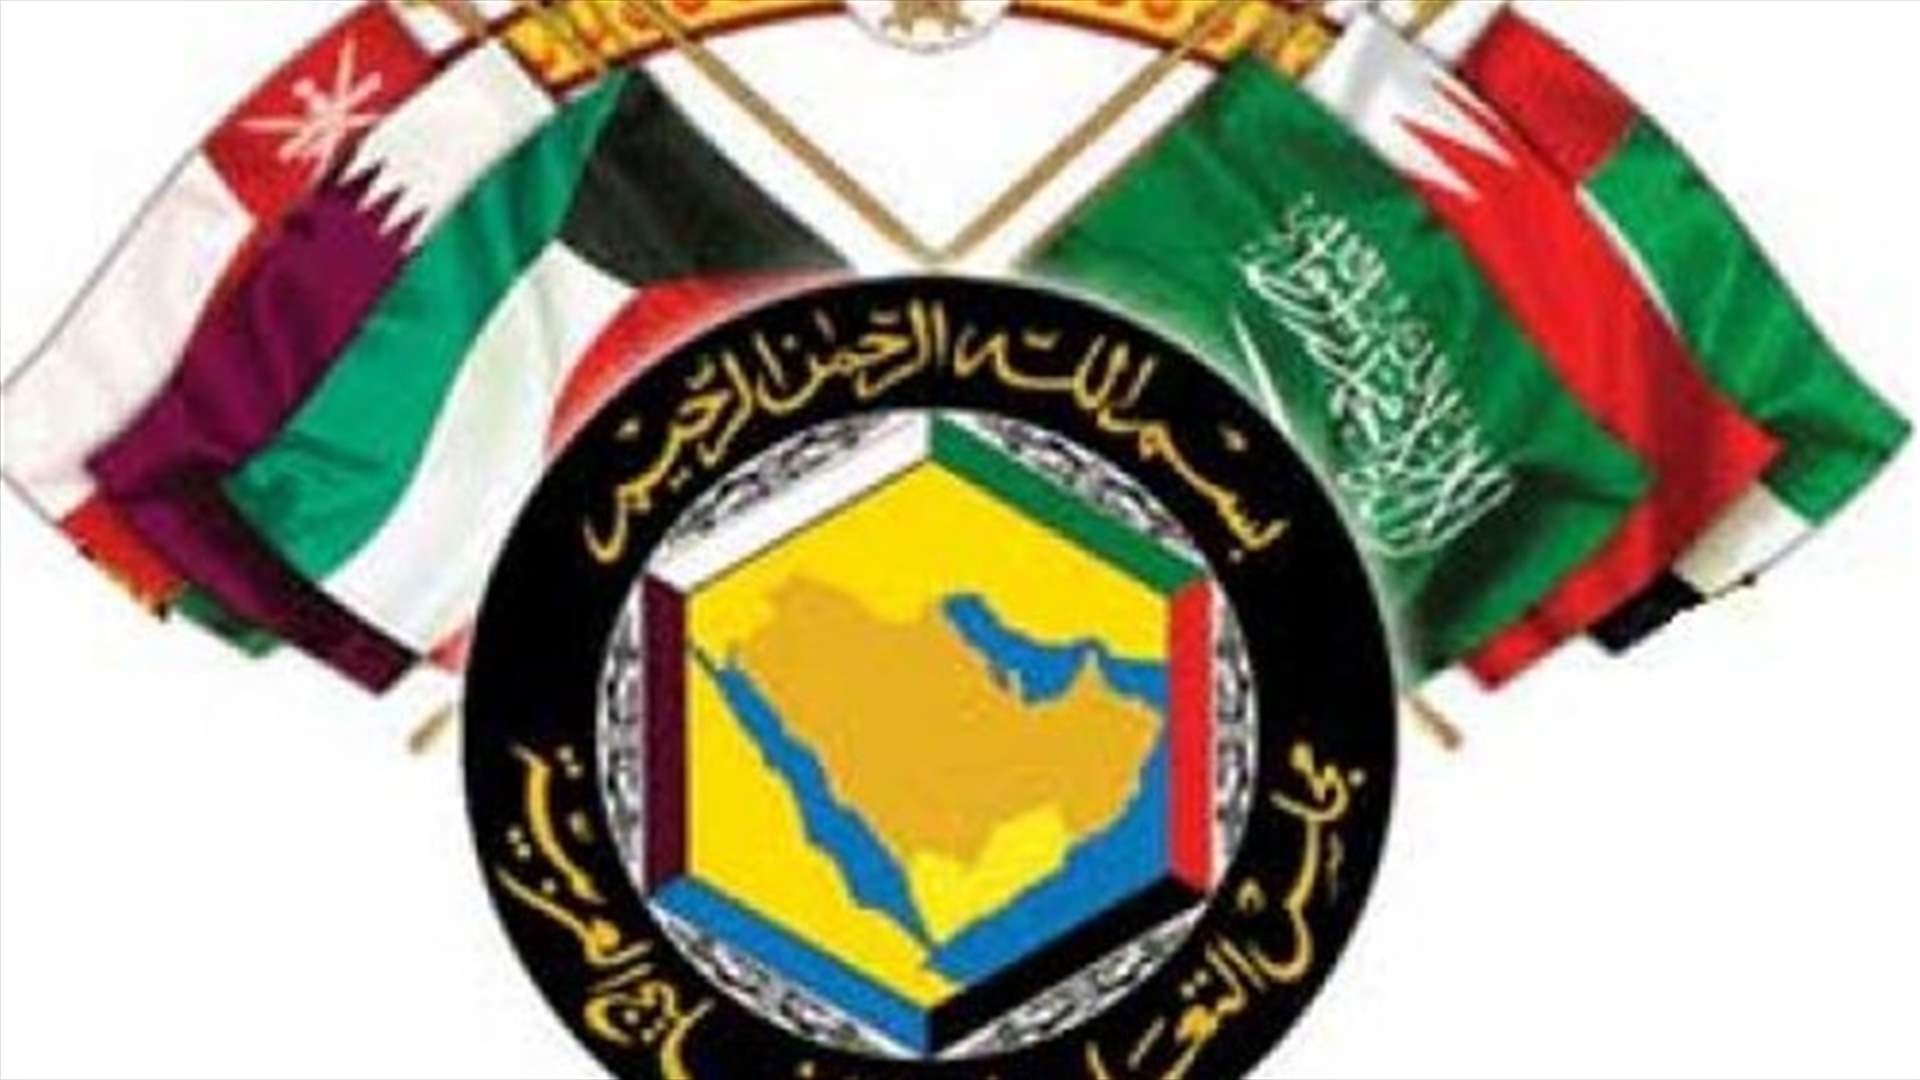 Gulf Arab states reject Iranian influence in region - Al Arabiya